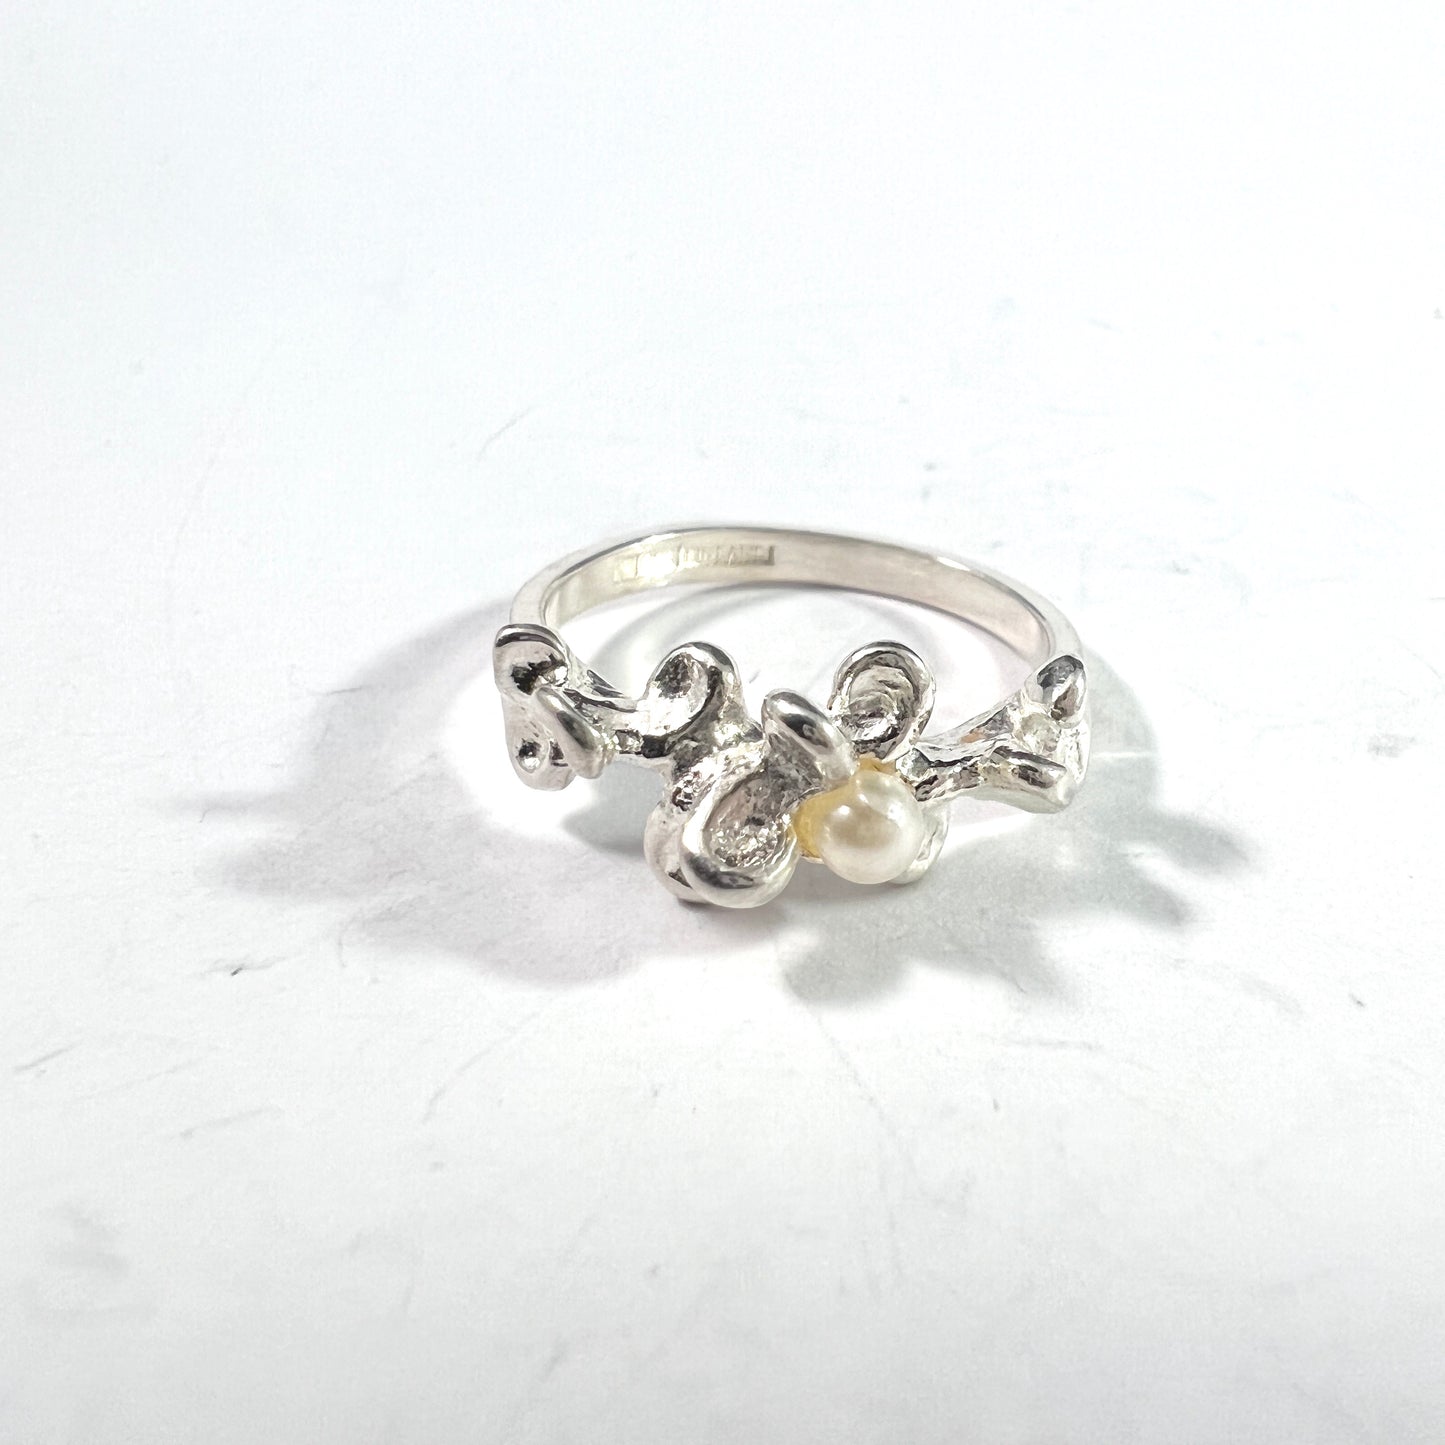 Kultasepat Salovaara, Finland. Vintage Sterling Silver Cultured Pearl Ring.